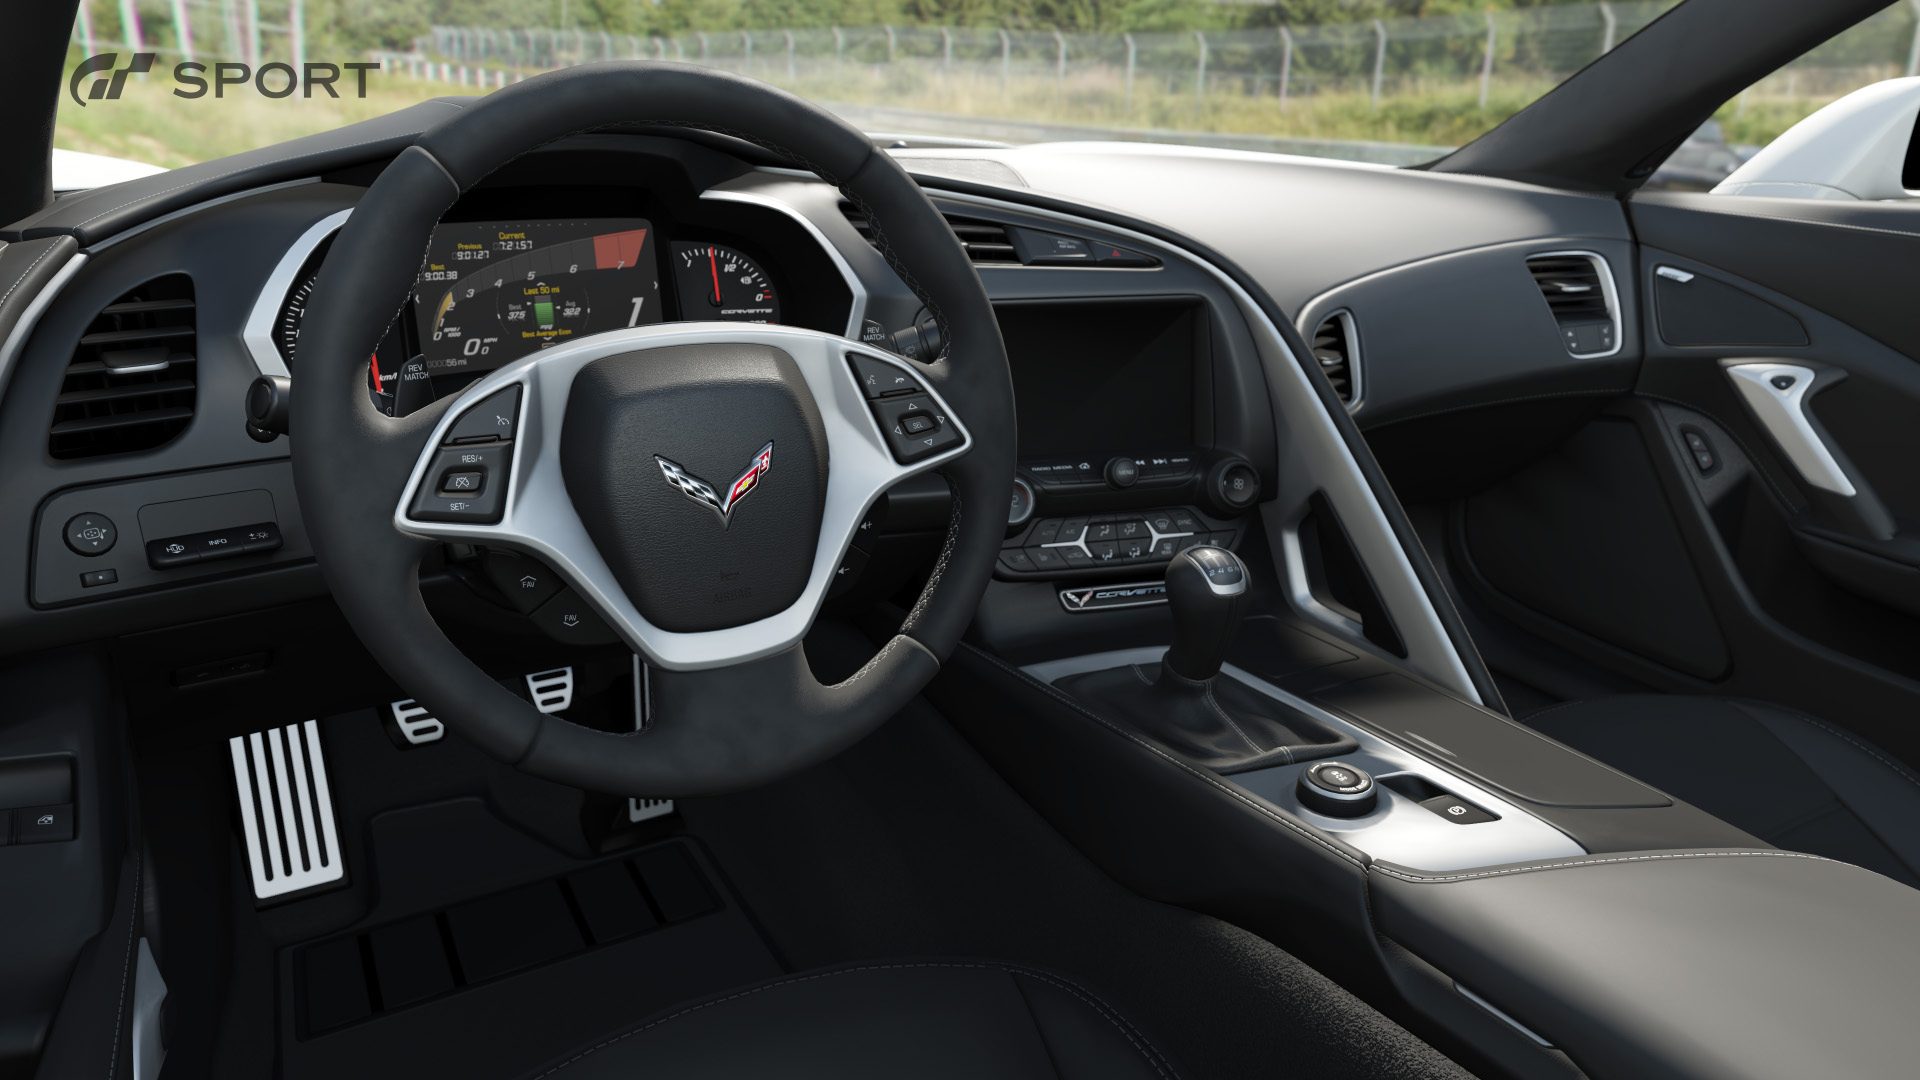 gt-sport_interior_Chevrolet_Corvette_C7.jpg